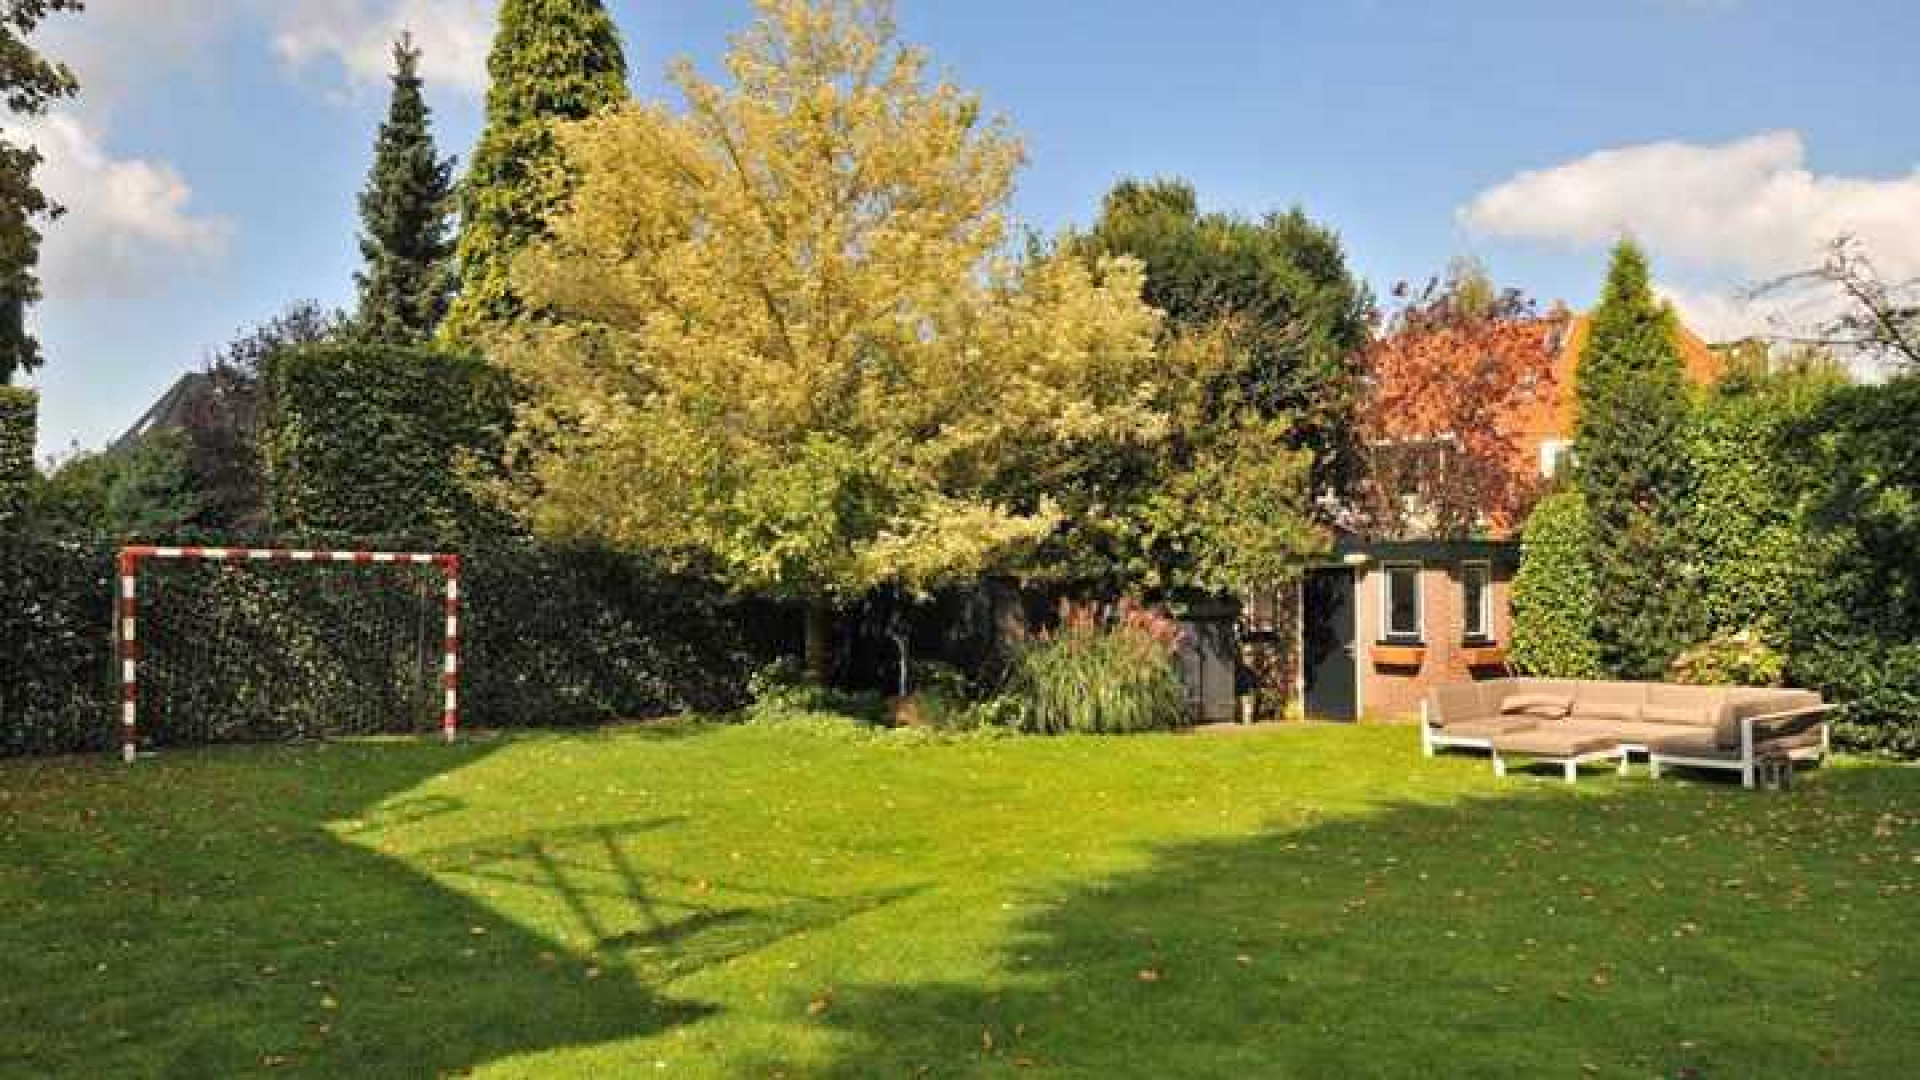 Ivo Niehe maakt forse winst op verkoop van zijn Gooische villa. Zie foto's 14